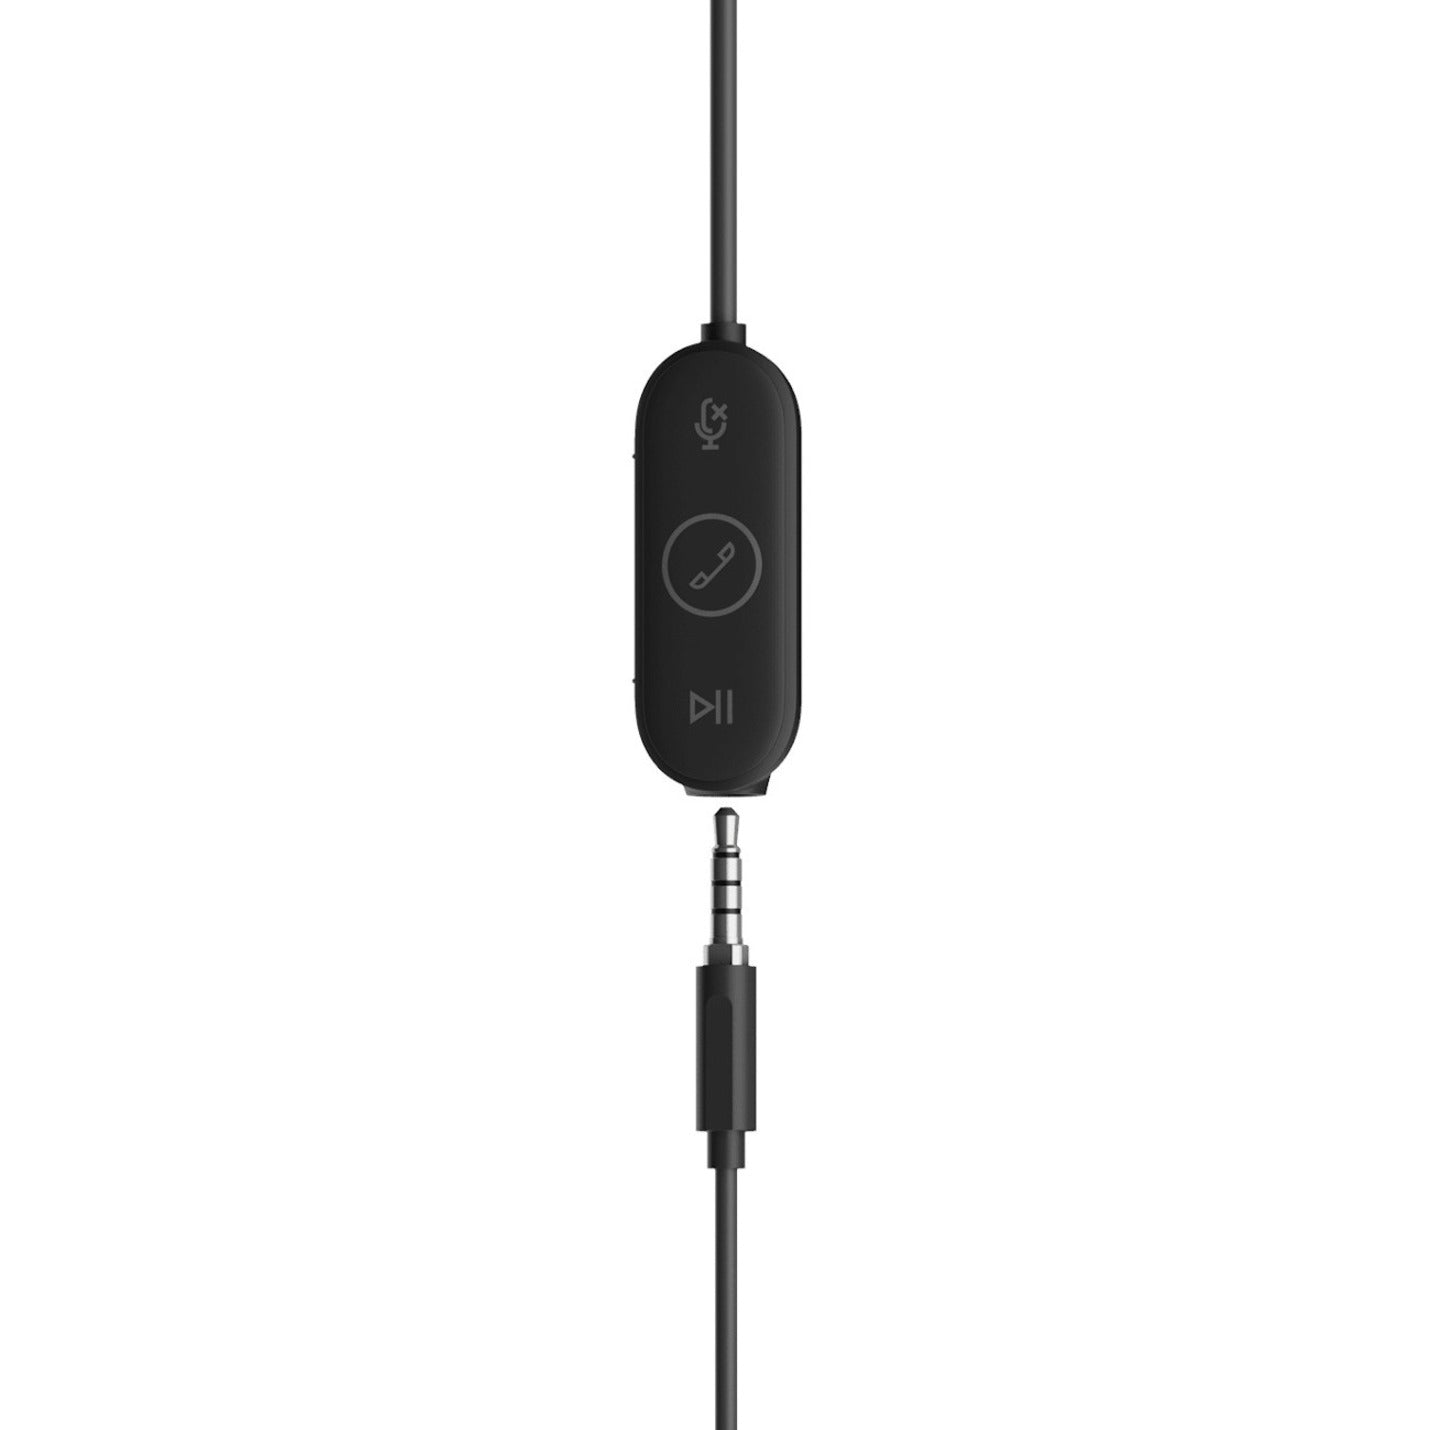 Logitech 981-001012 Zone Wired Écouteurs Intra-auriculaires UC Réduction du Bruit Microphone Omnidirectionnel Garantie de 2 Ans